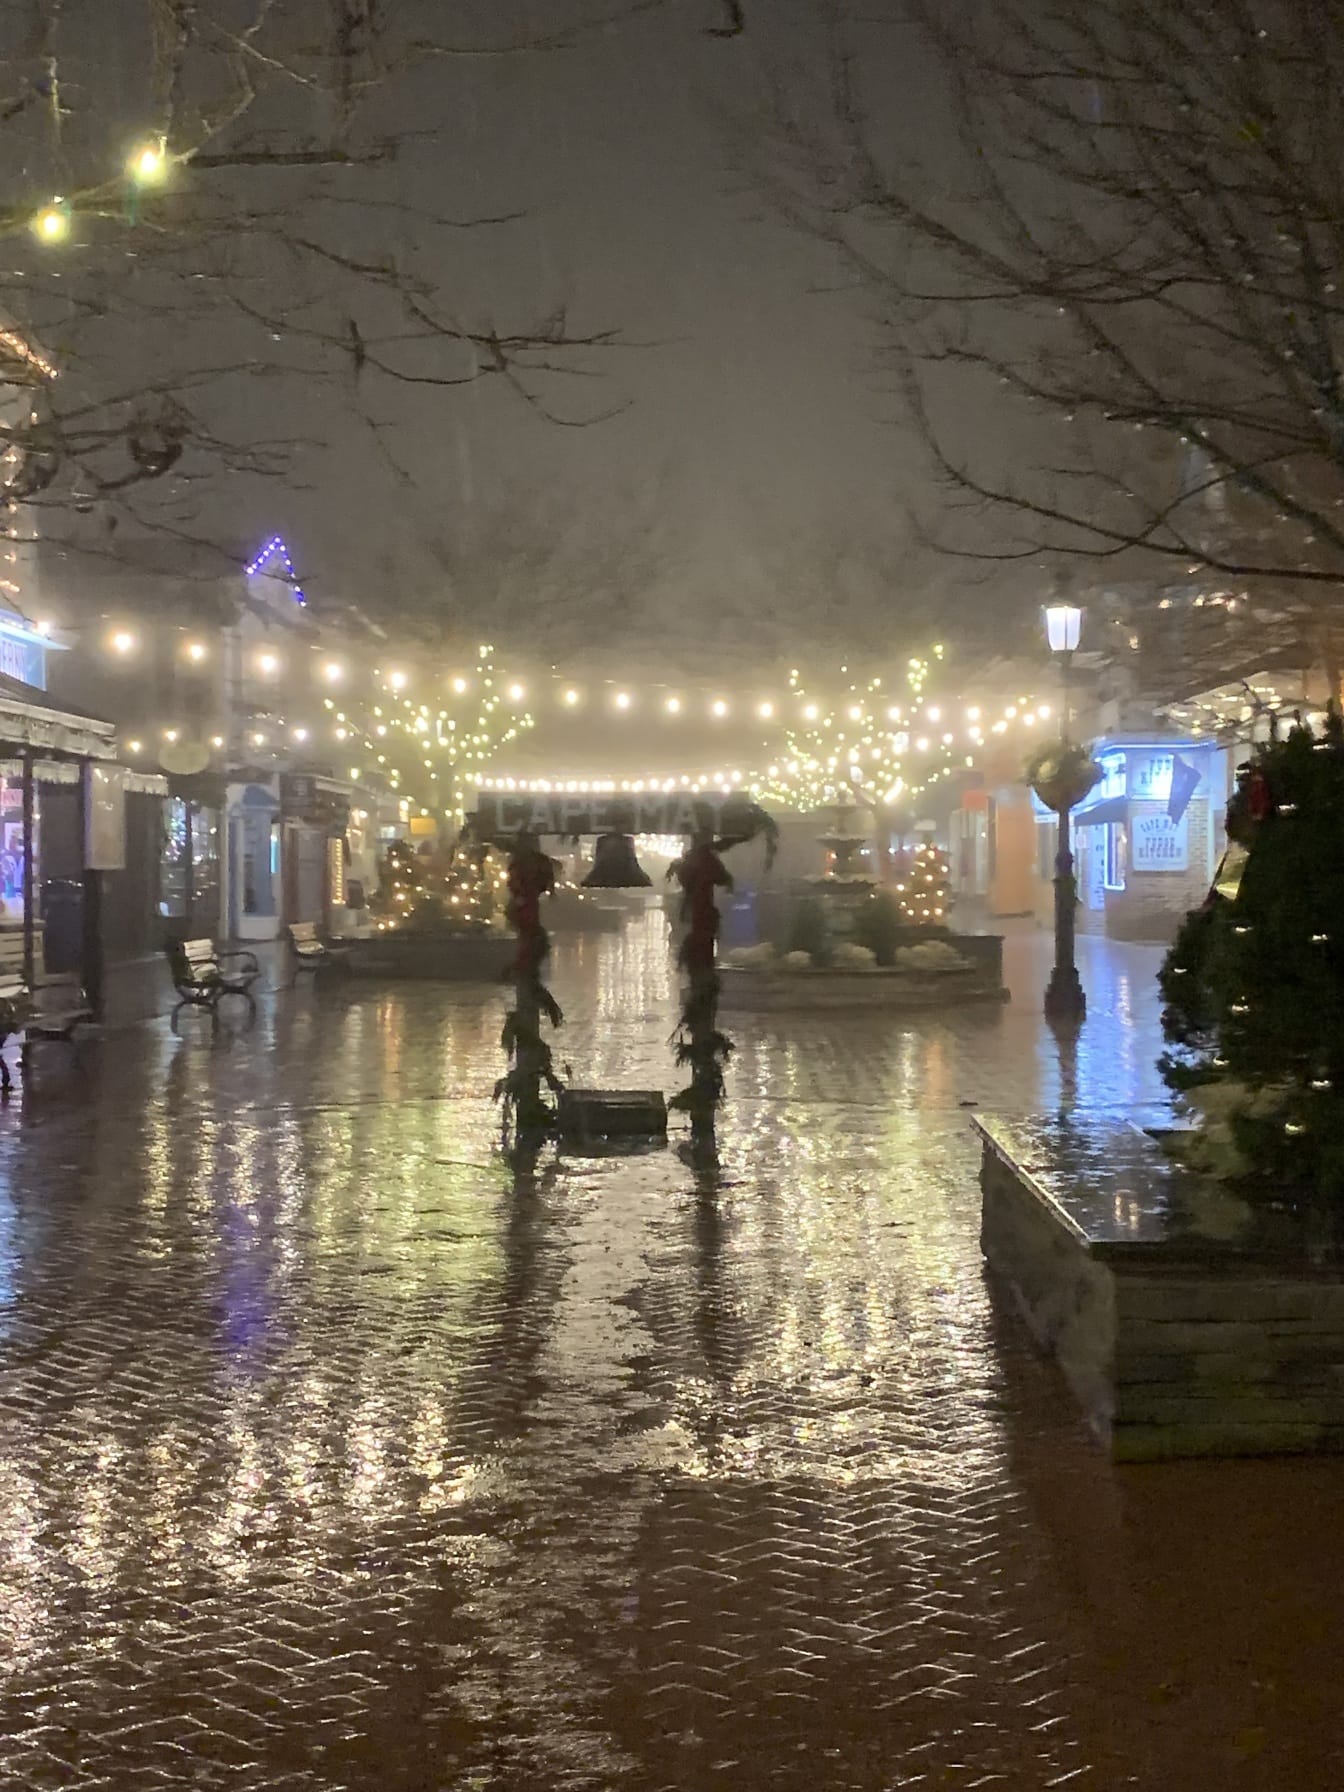 Cape May Washington Mall réveillon du Nouvel An par une nuit pluvieuse avec des lumières de Noël